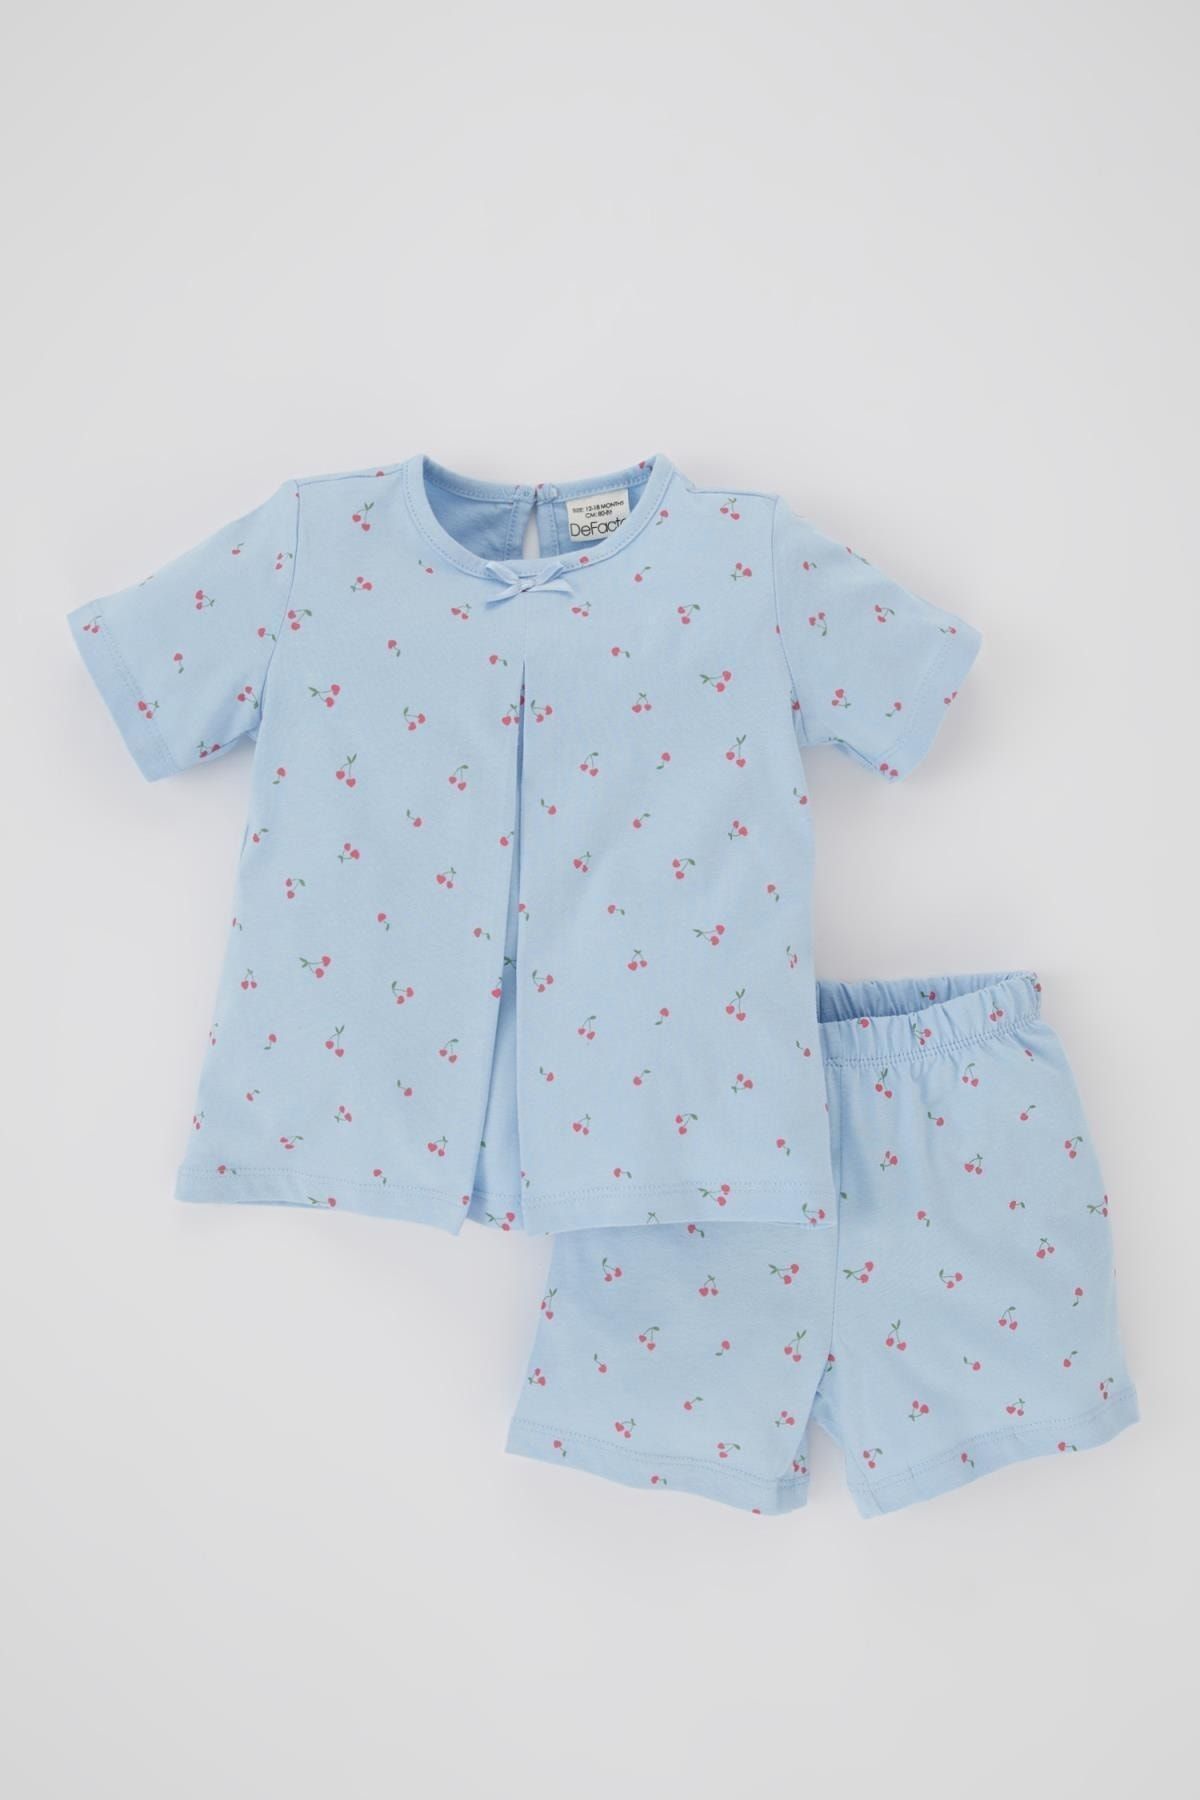 Defacto Kız Bebek Çiçekli Kısa Kollu Penye Pijama Takımı B1228a523hs